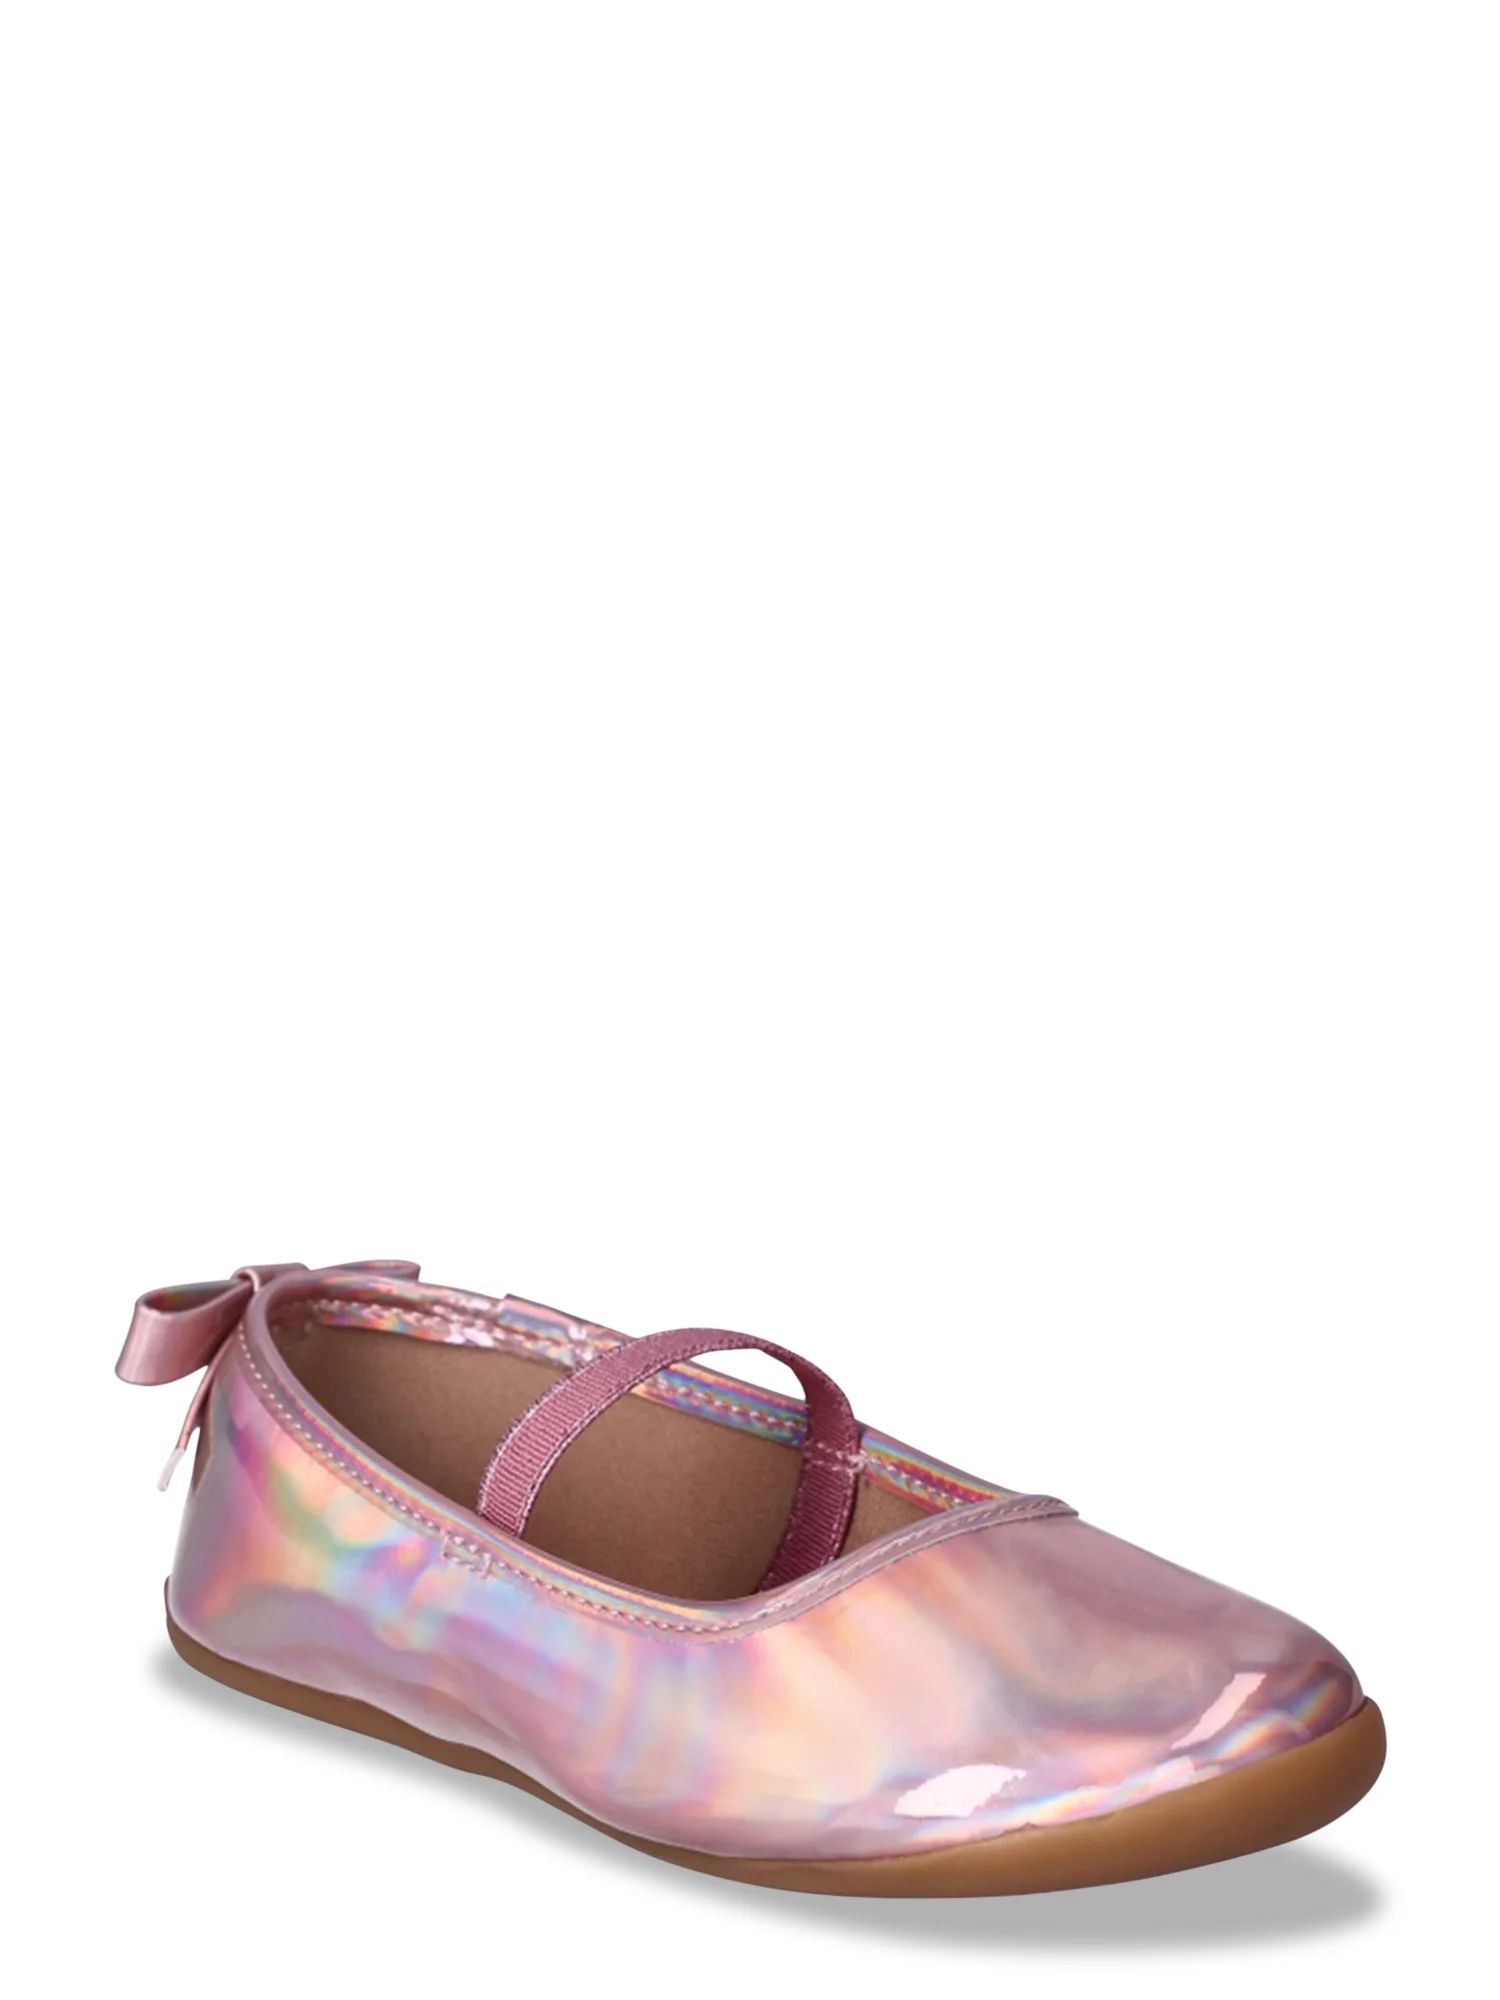 Wonder Nation Toddler Girls Ballet Flat Dress Shoes, Sizes 7-12 | Walmart (US)